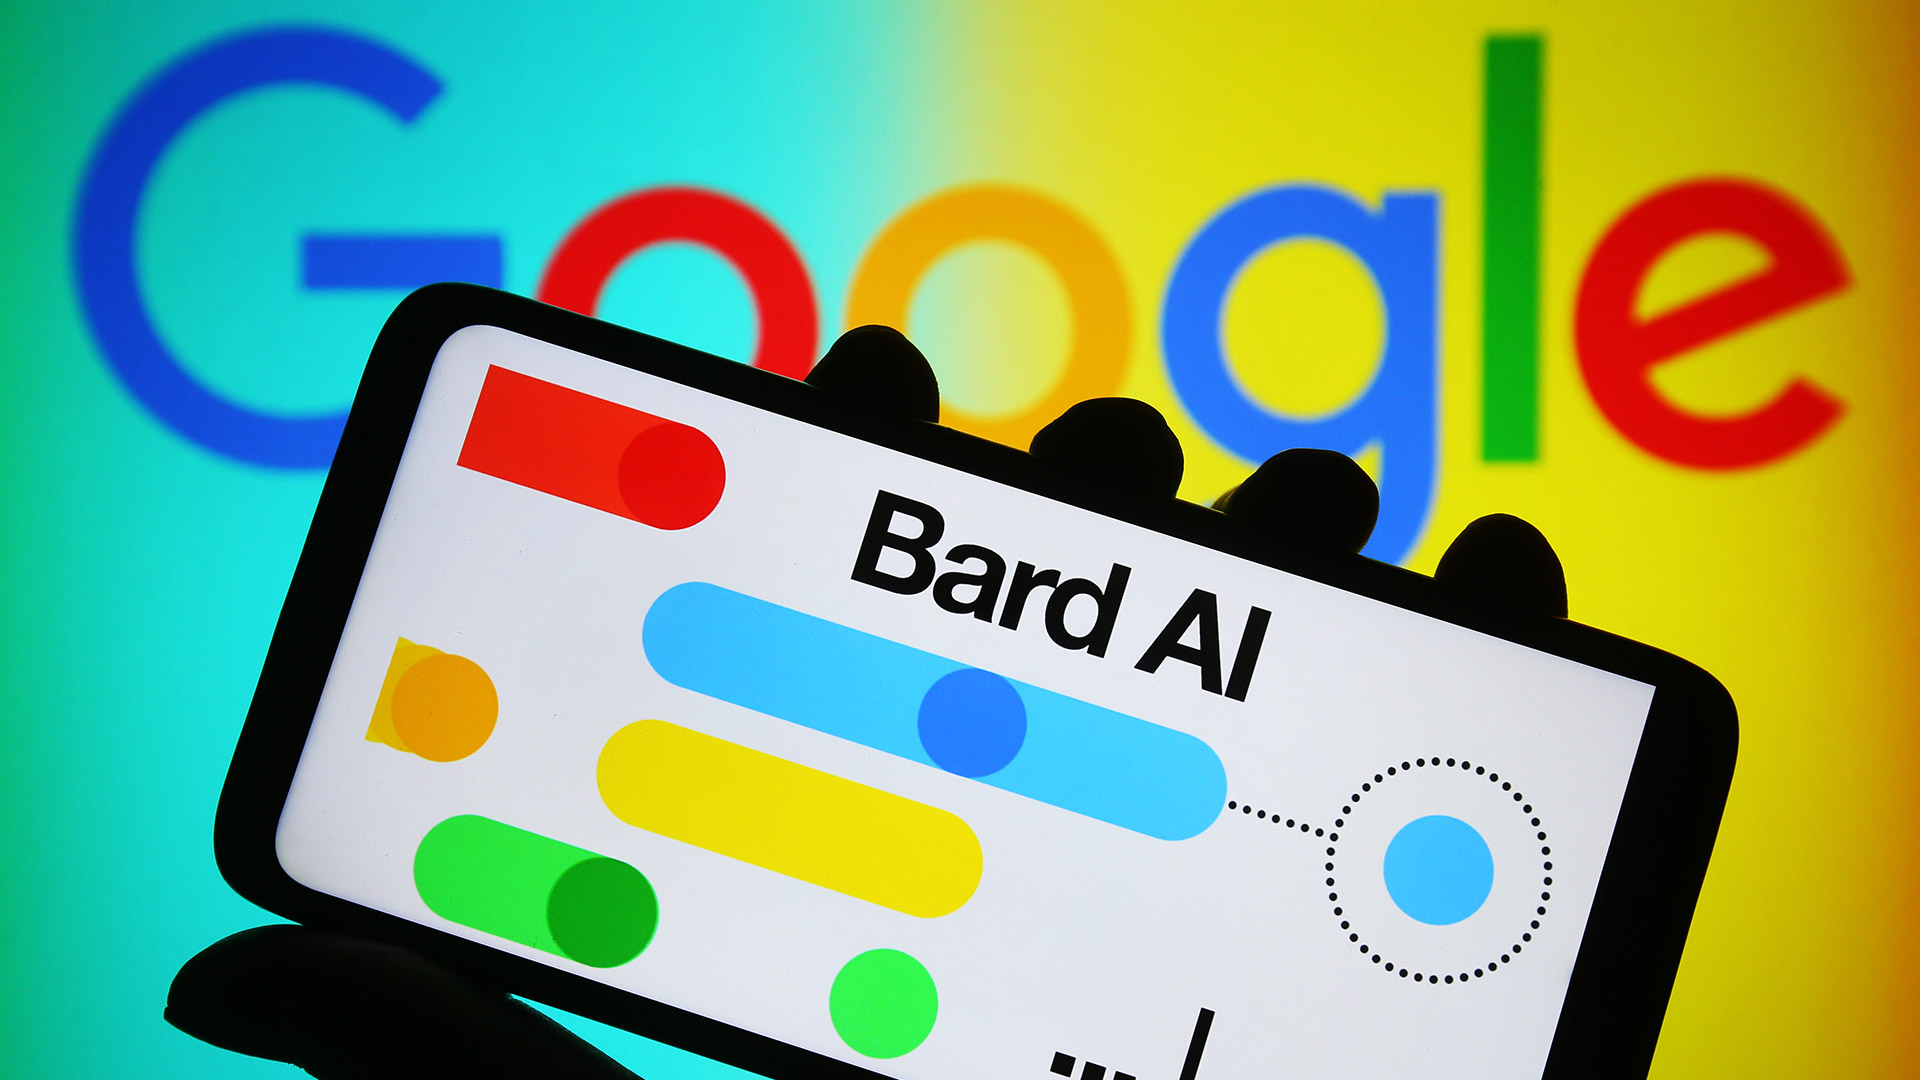 Логотип Google Bard на смартфоне на фоне красочного фона с логотипом Google